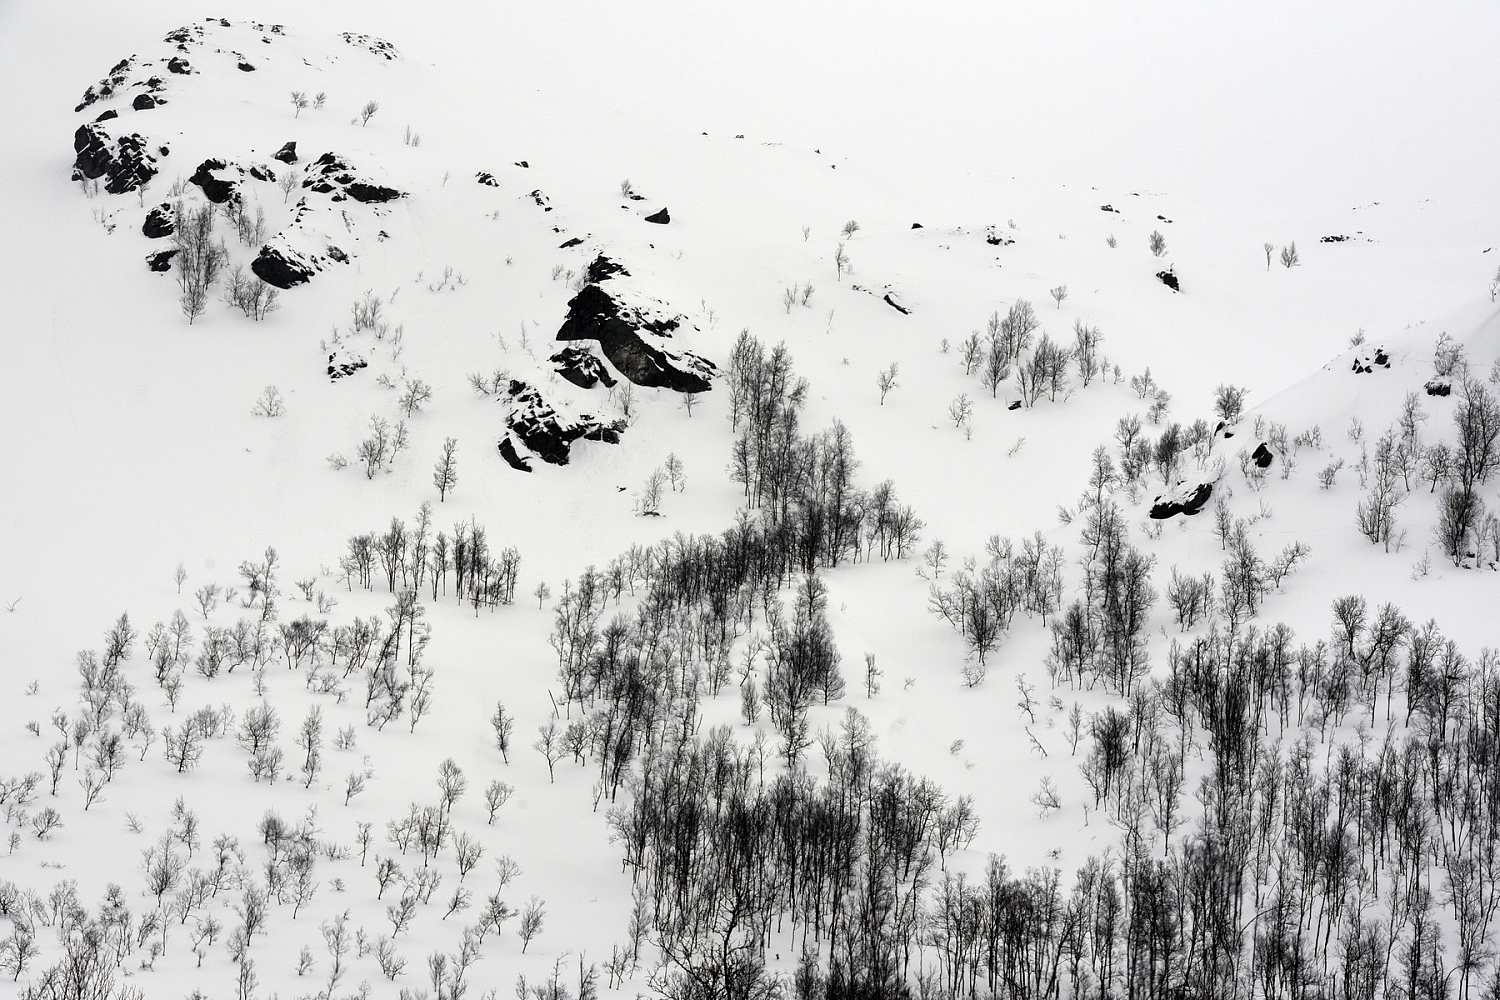 Dolph kessler - Lapland 